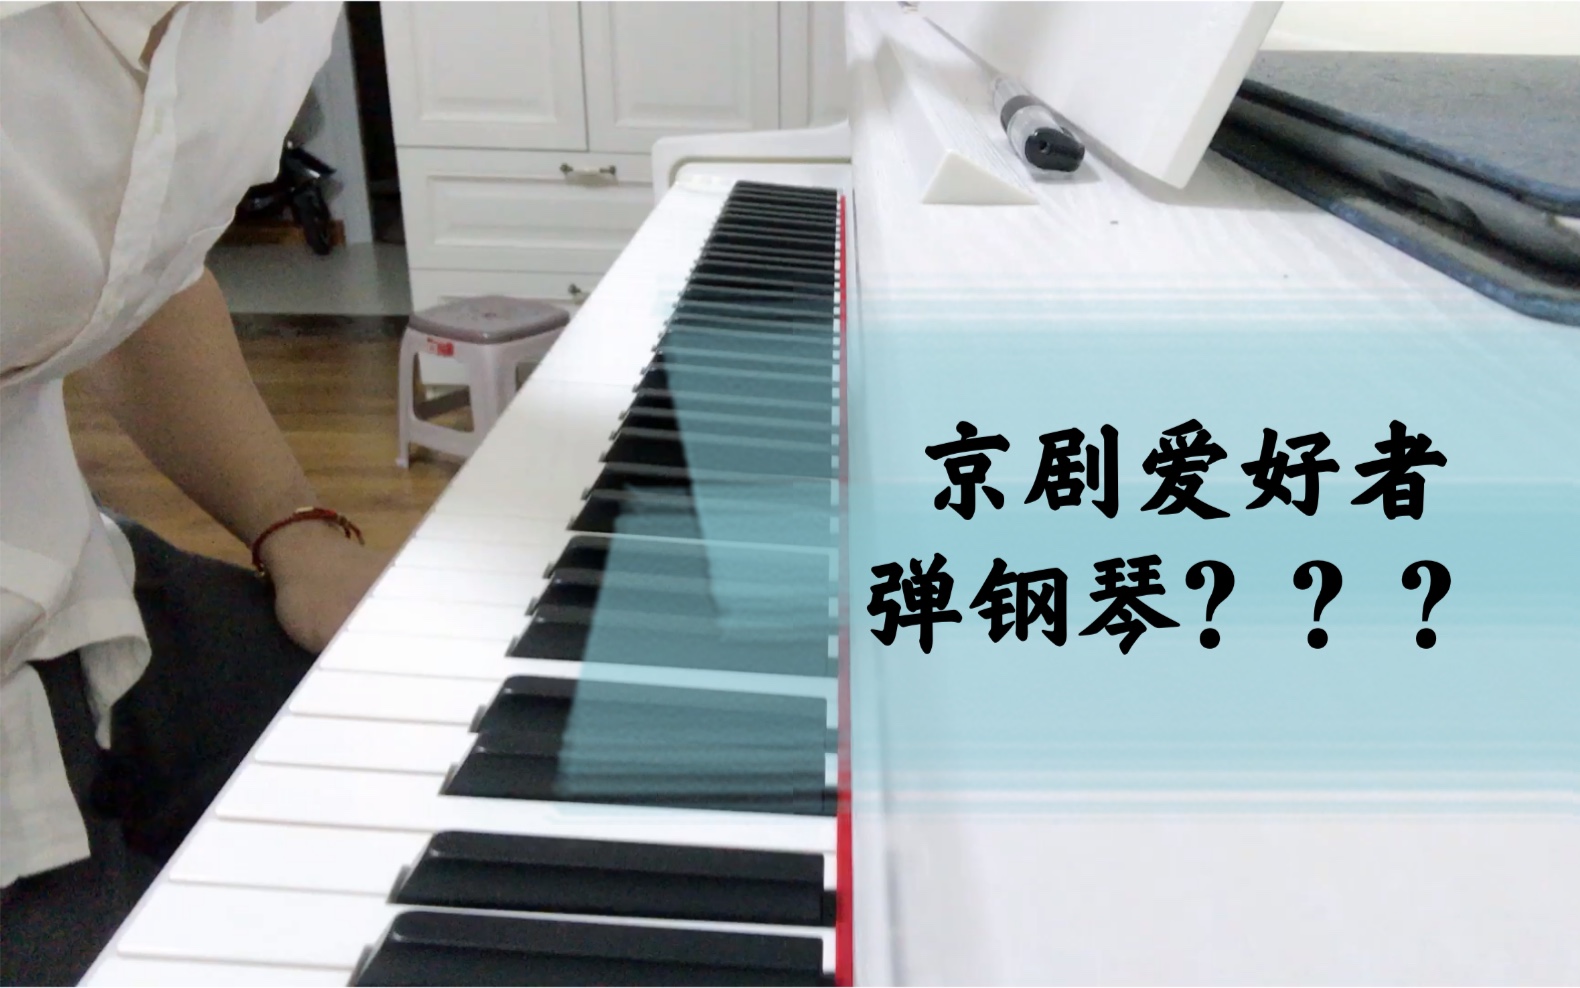 手机可以弹钢琴的游戏在哪_手机弹钢琴的游戏_钢琴弹手机游戏可以吗